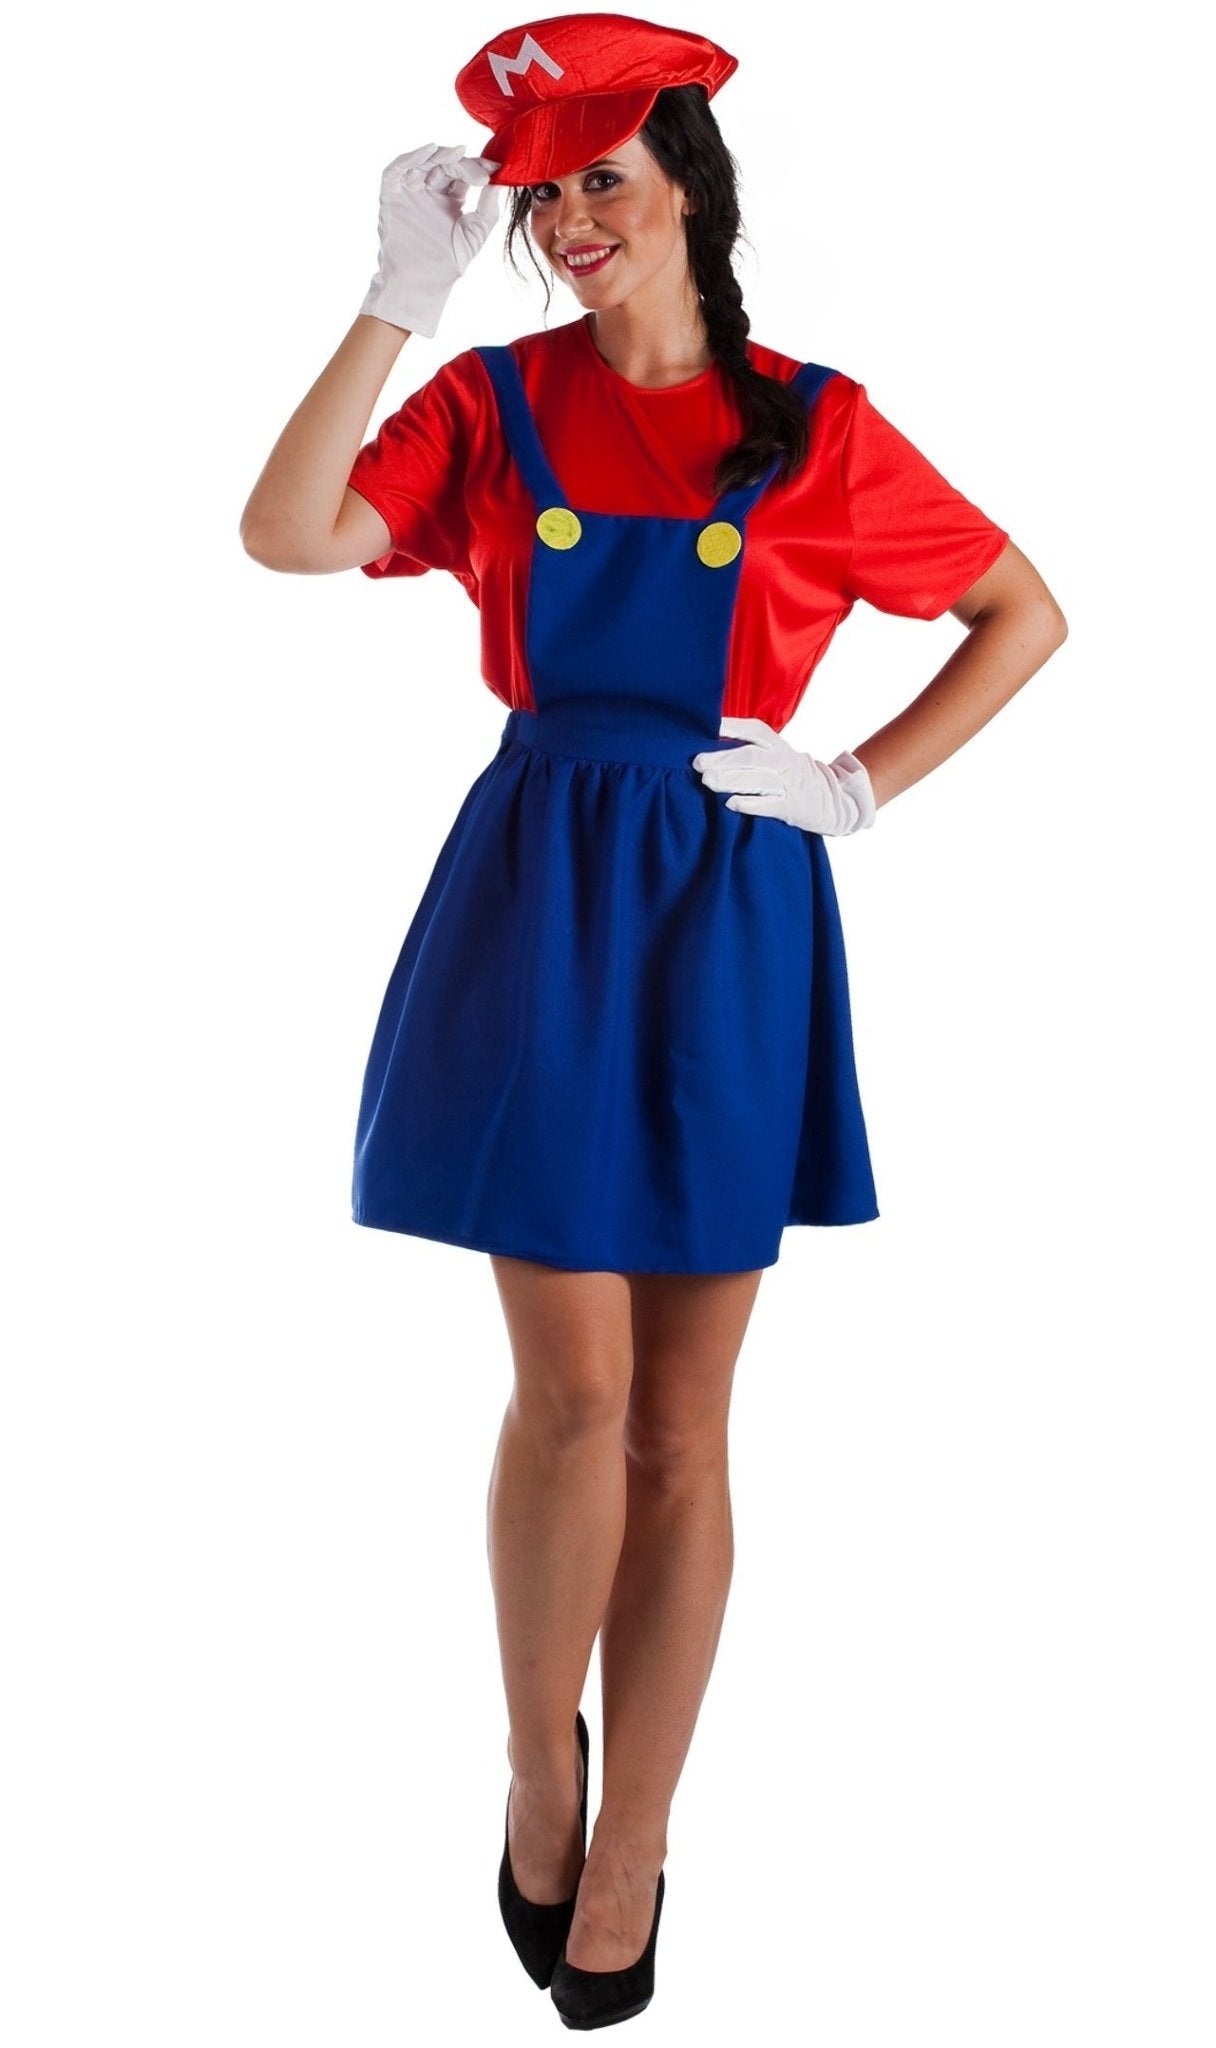 Acquista online il costume di Super Mario Cap per bambina